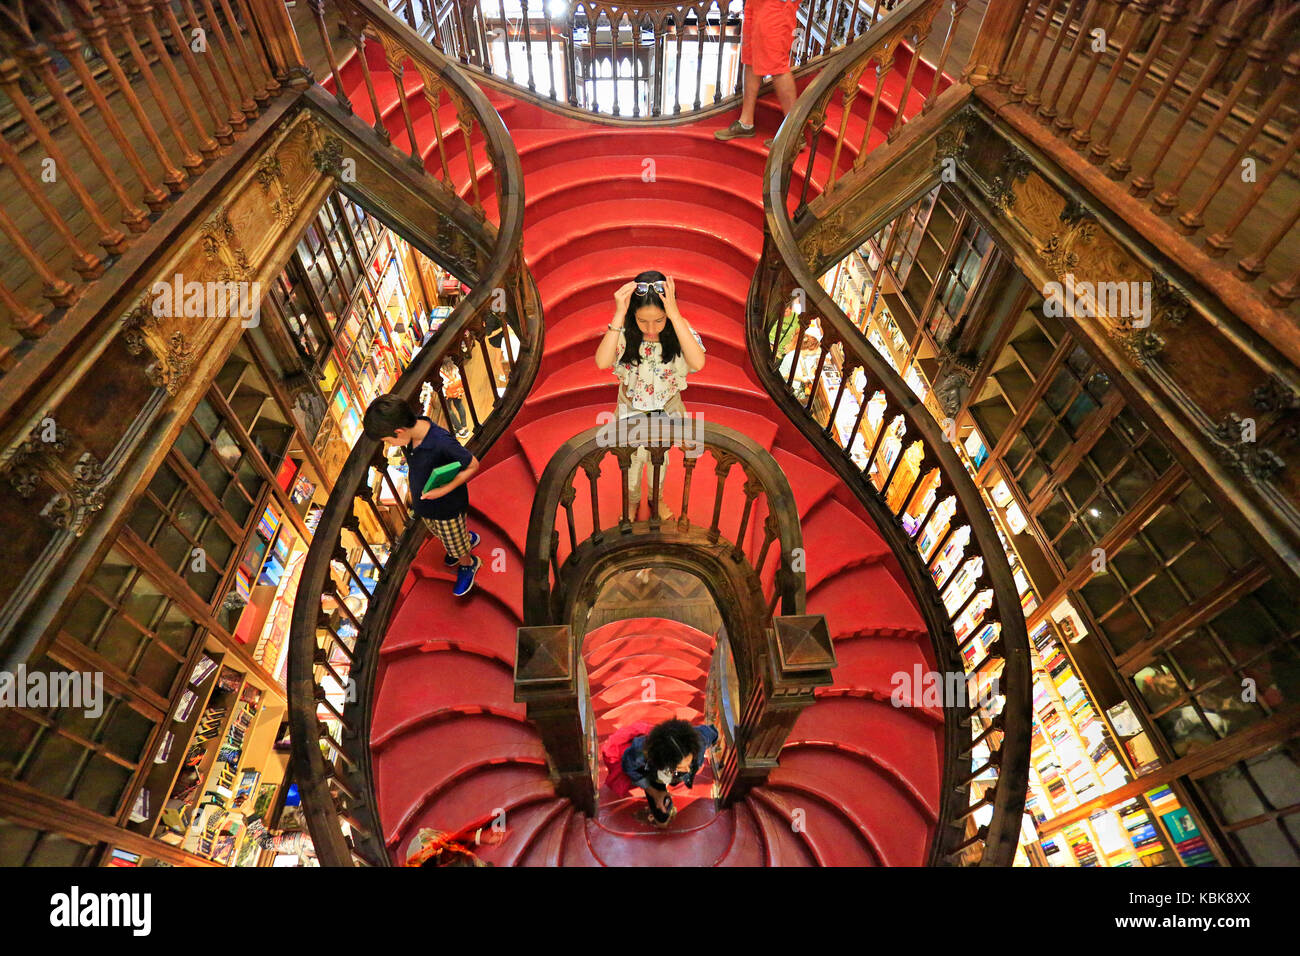 Porto, Portugal - Juli 07, 2017: Hohe Betrachtungswinkel und der Treppe im Inneren der Berühmten Buchhandlung Lello e irmao, als einer der schönsten Europas angesehen. Stockfoto